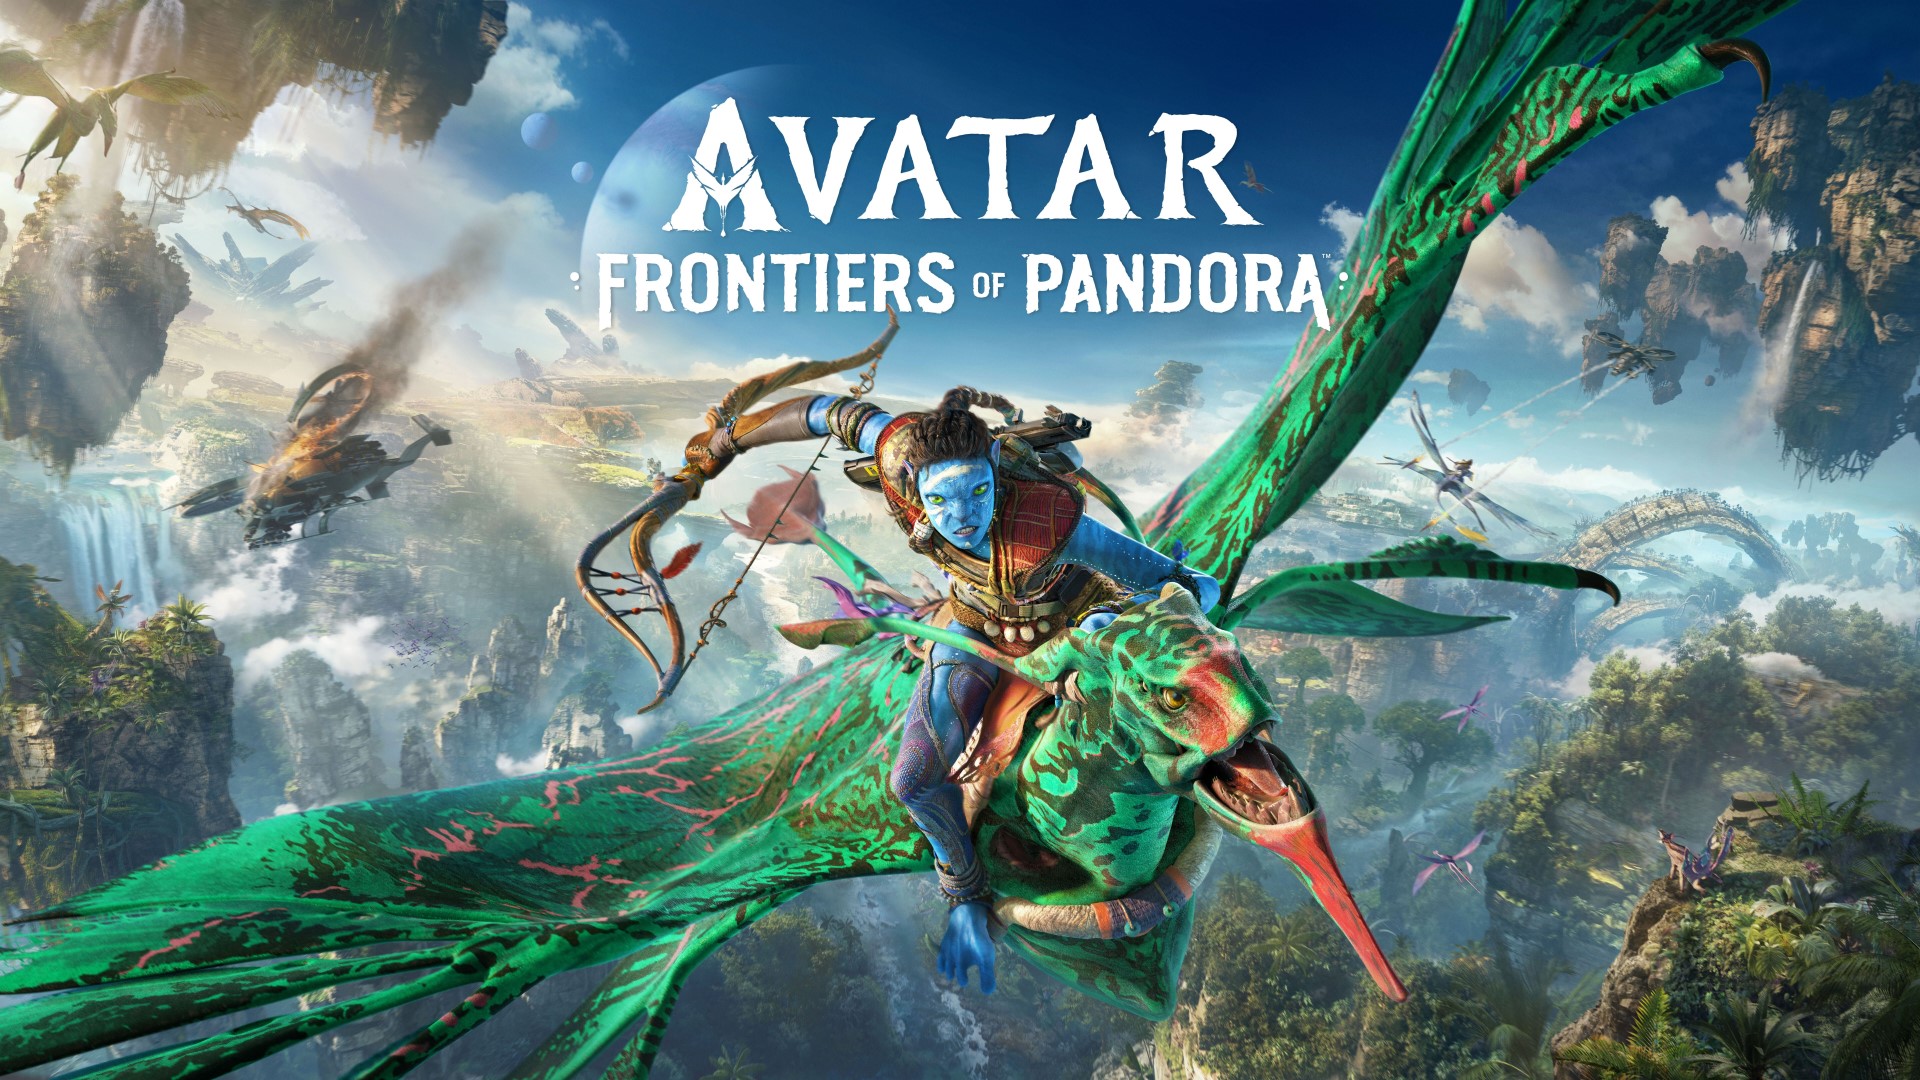 Ubisoft เผยตัวอย่างใหม่ของ Avatar: Frontiers of Pandora โชว์เคสการต่อสู้และเนื้อเรื่องของเกม